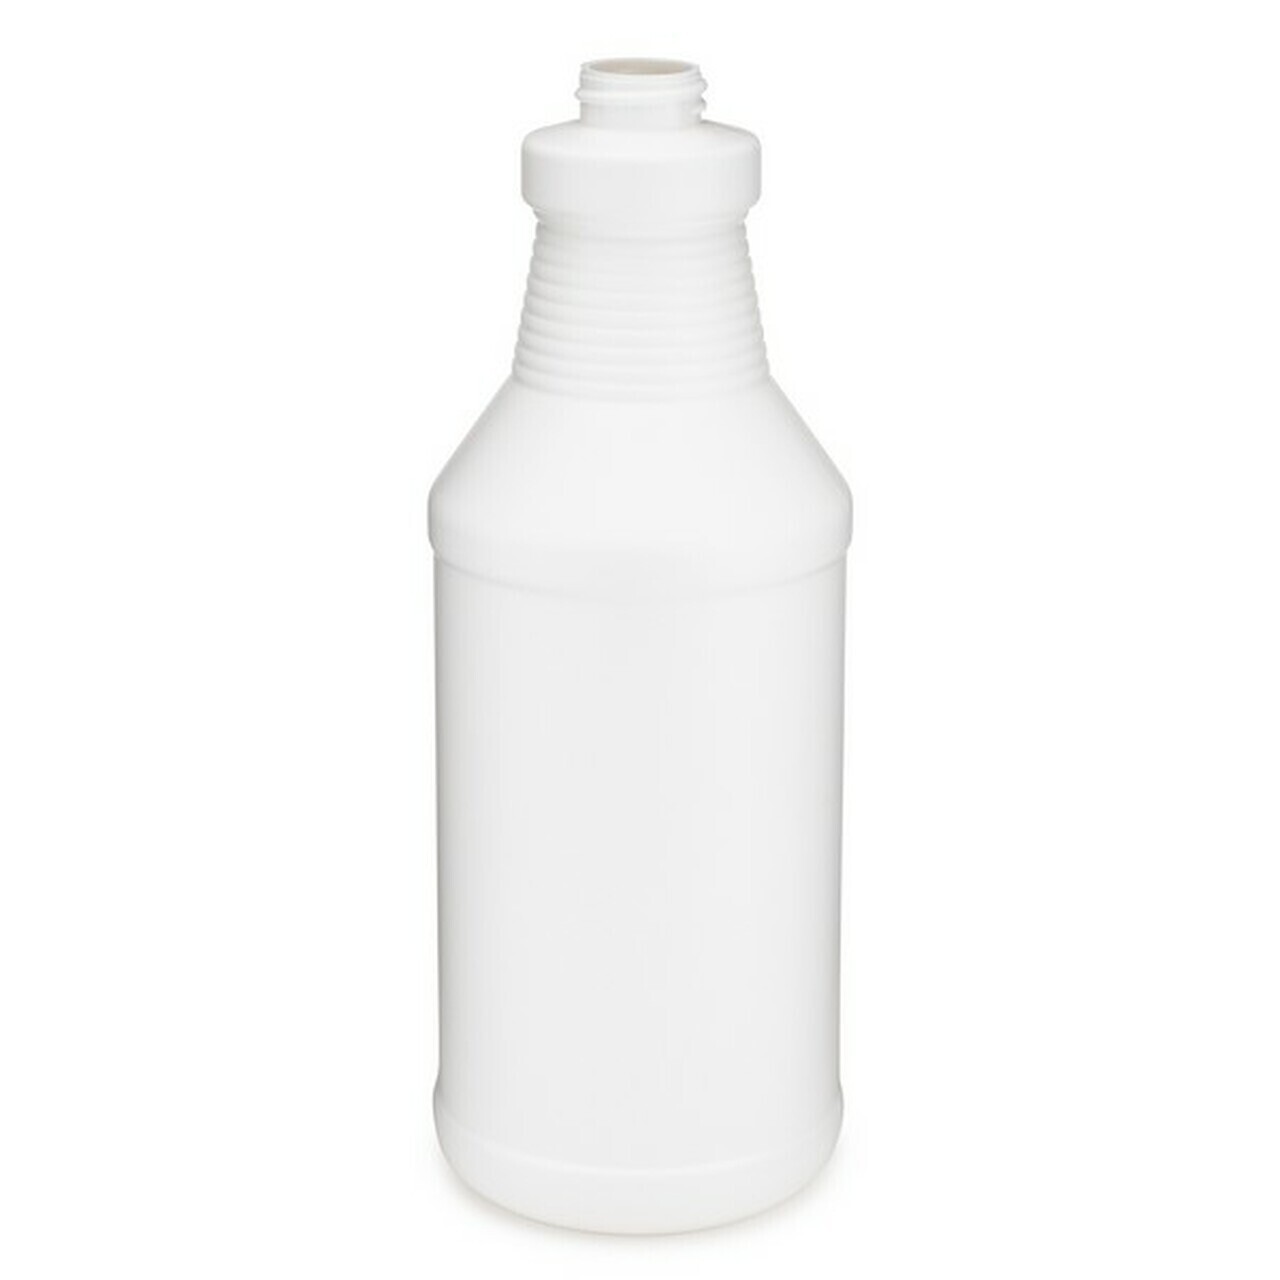 32 oz Plastic Spray Bottles